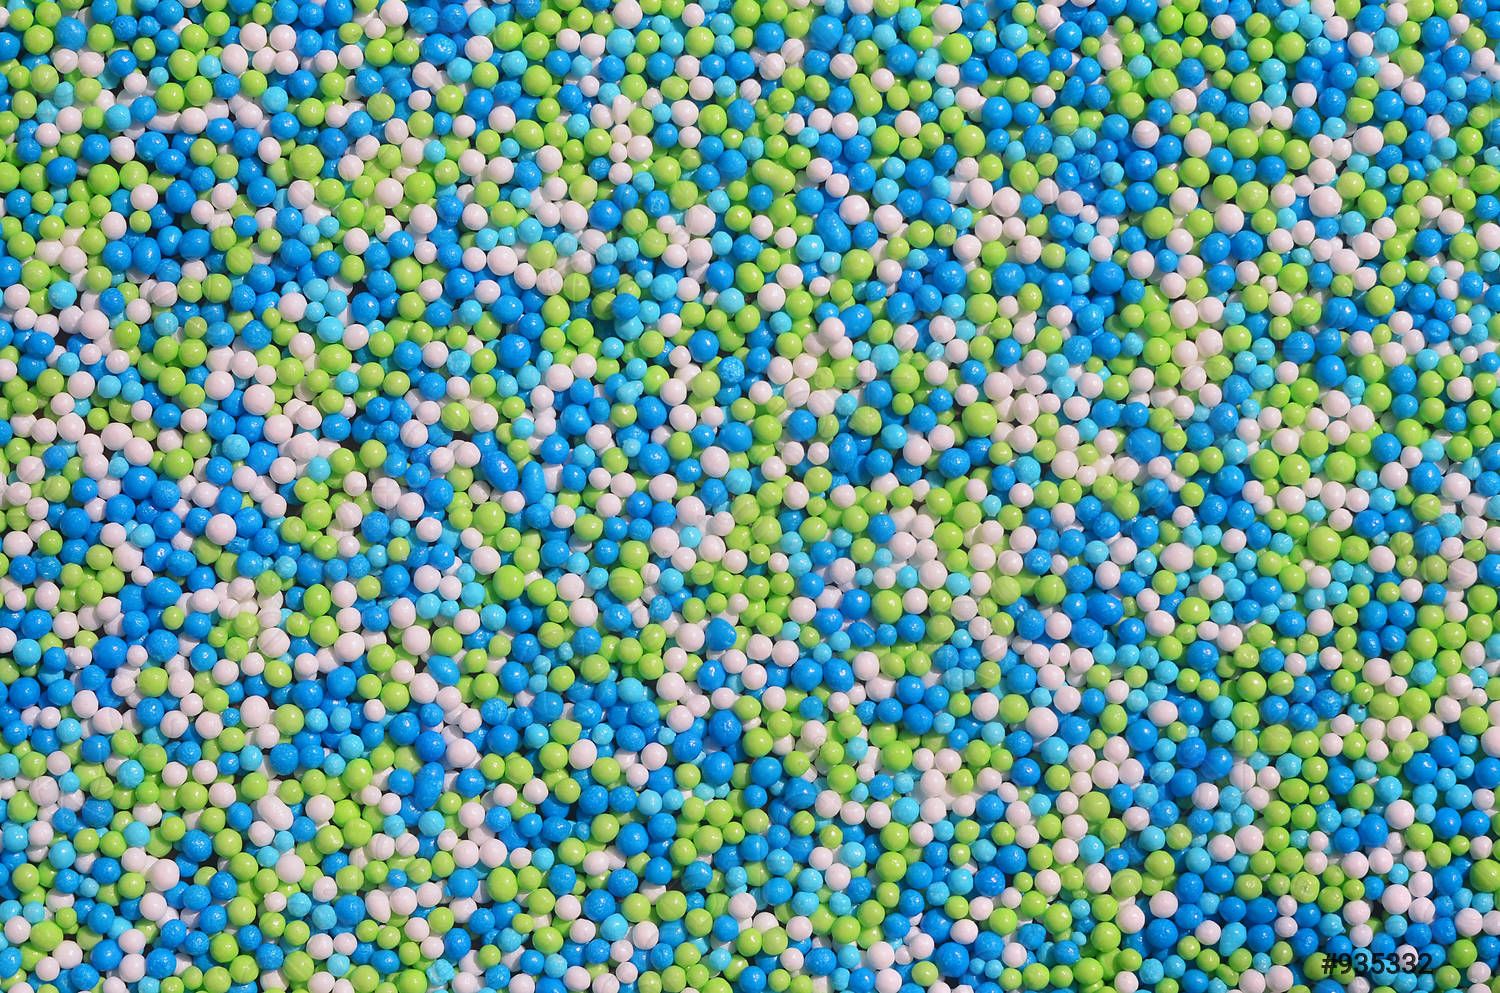  Farbiges Hintergrundbild 1500x993. Hintergrundbild einer Vielzahl farbiger glasierter Pulver in Form kleiner Kugeln vorrätig 935332